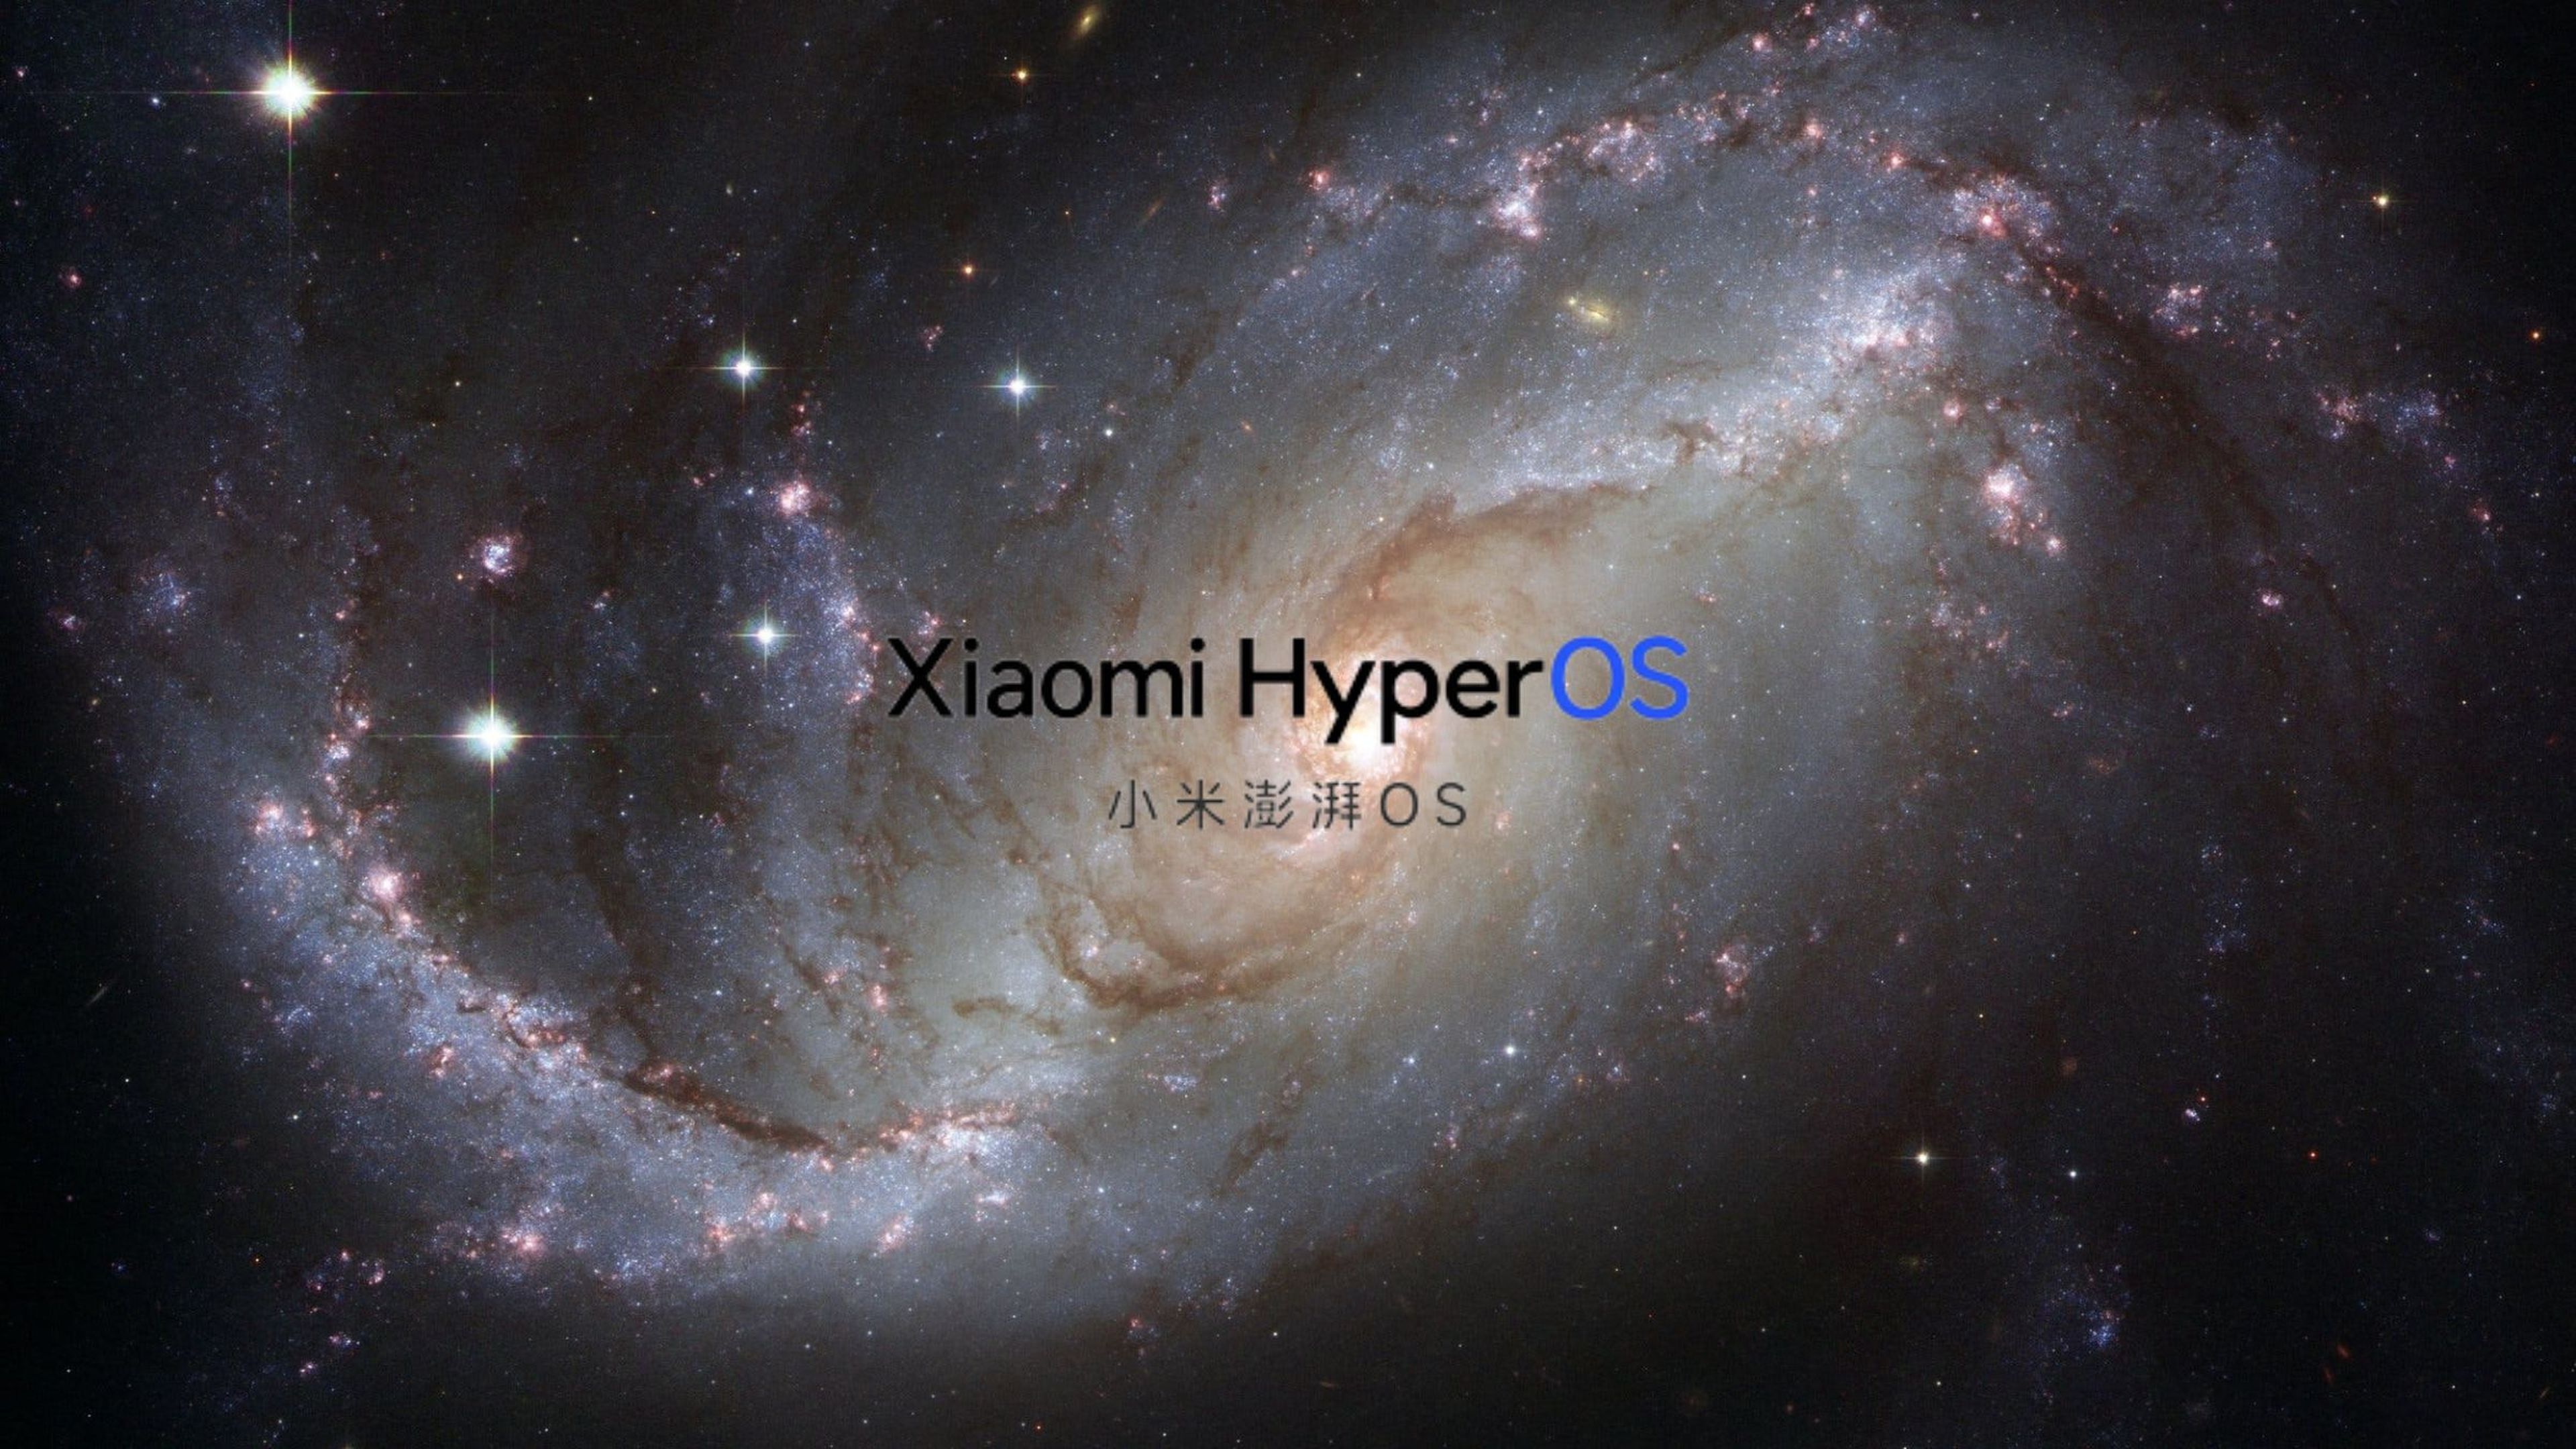 Un software para unirlos a todos: HyperOS, el nuevo sistema operativo de Xiaomi 